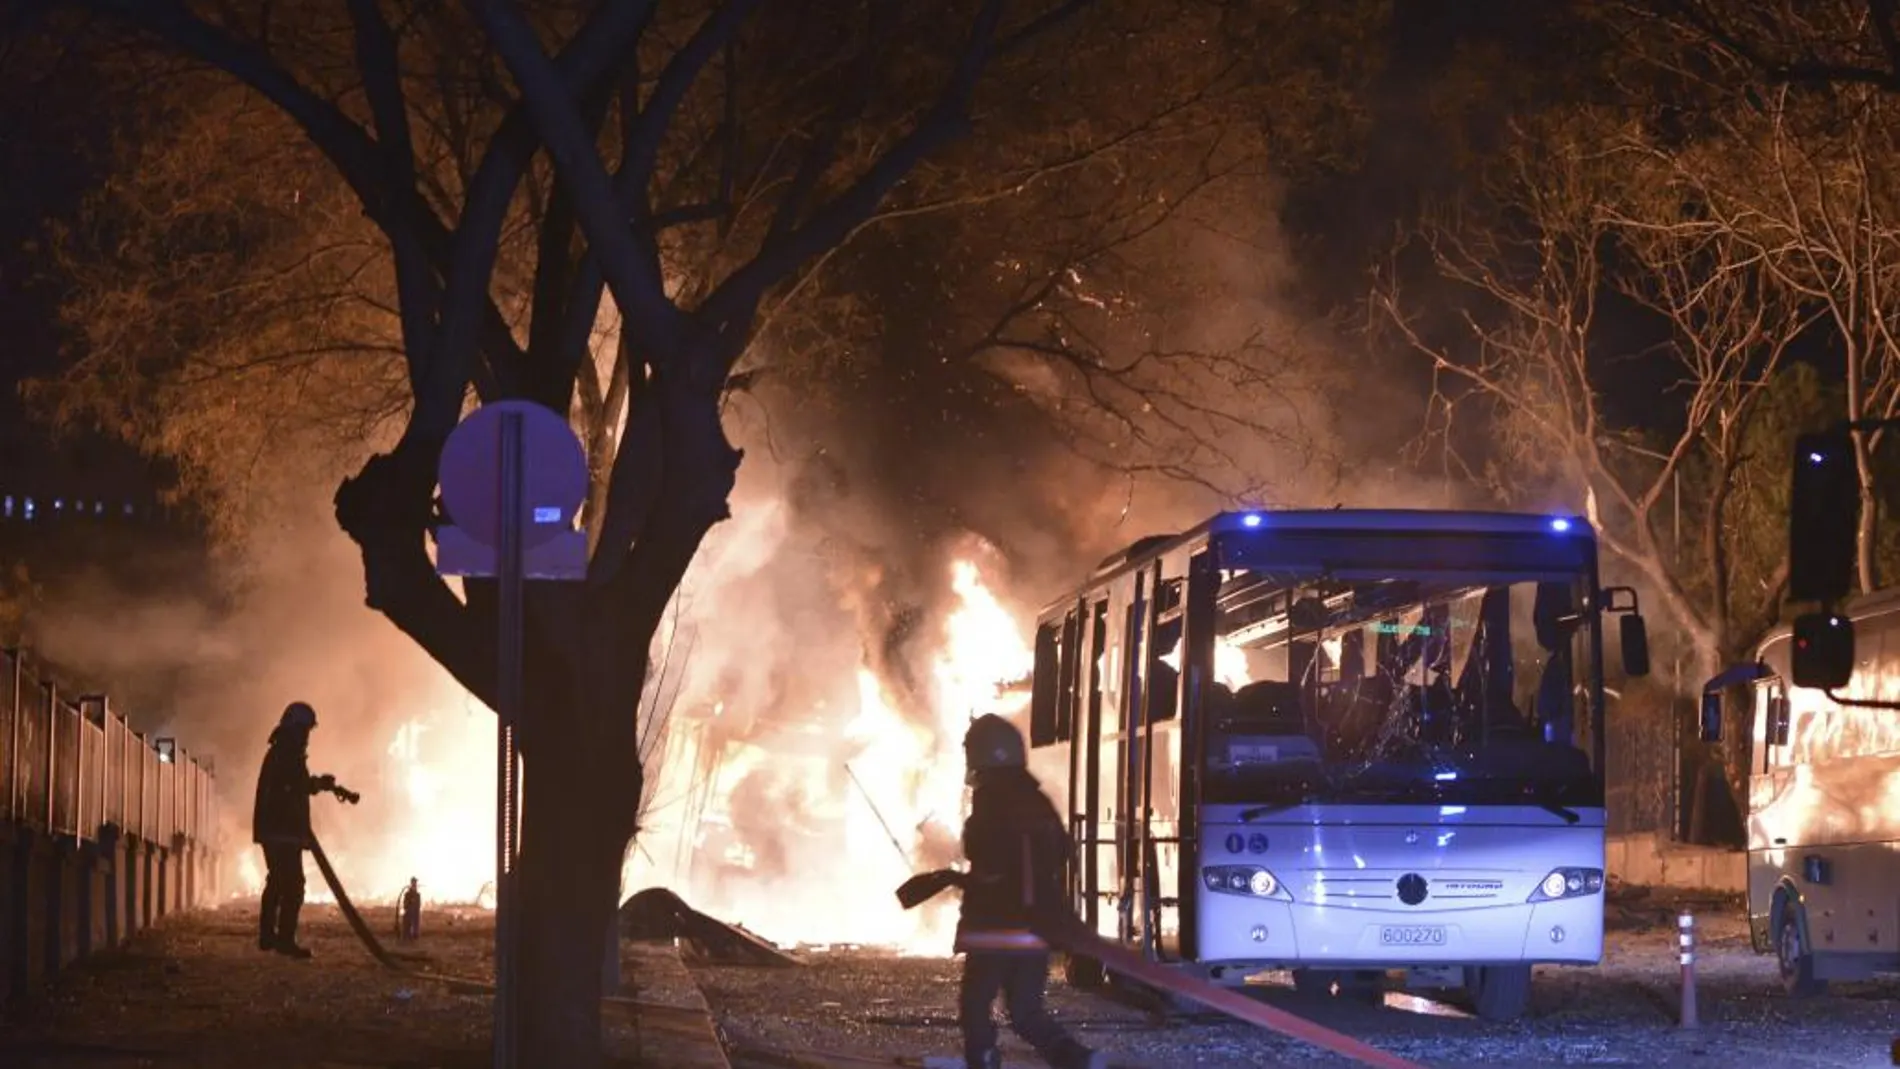 Imagen de uno de los autobuses objeto del atentado en llamas.